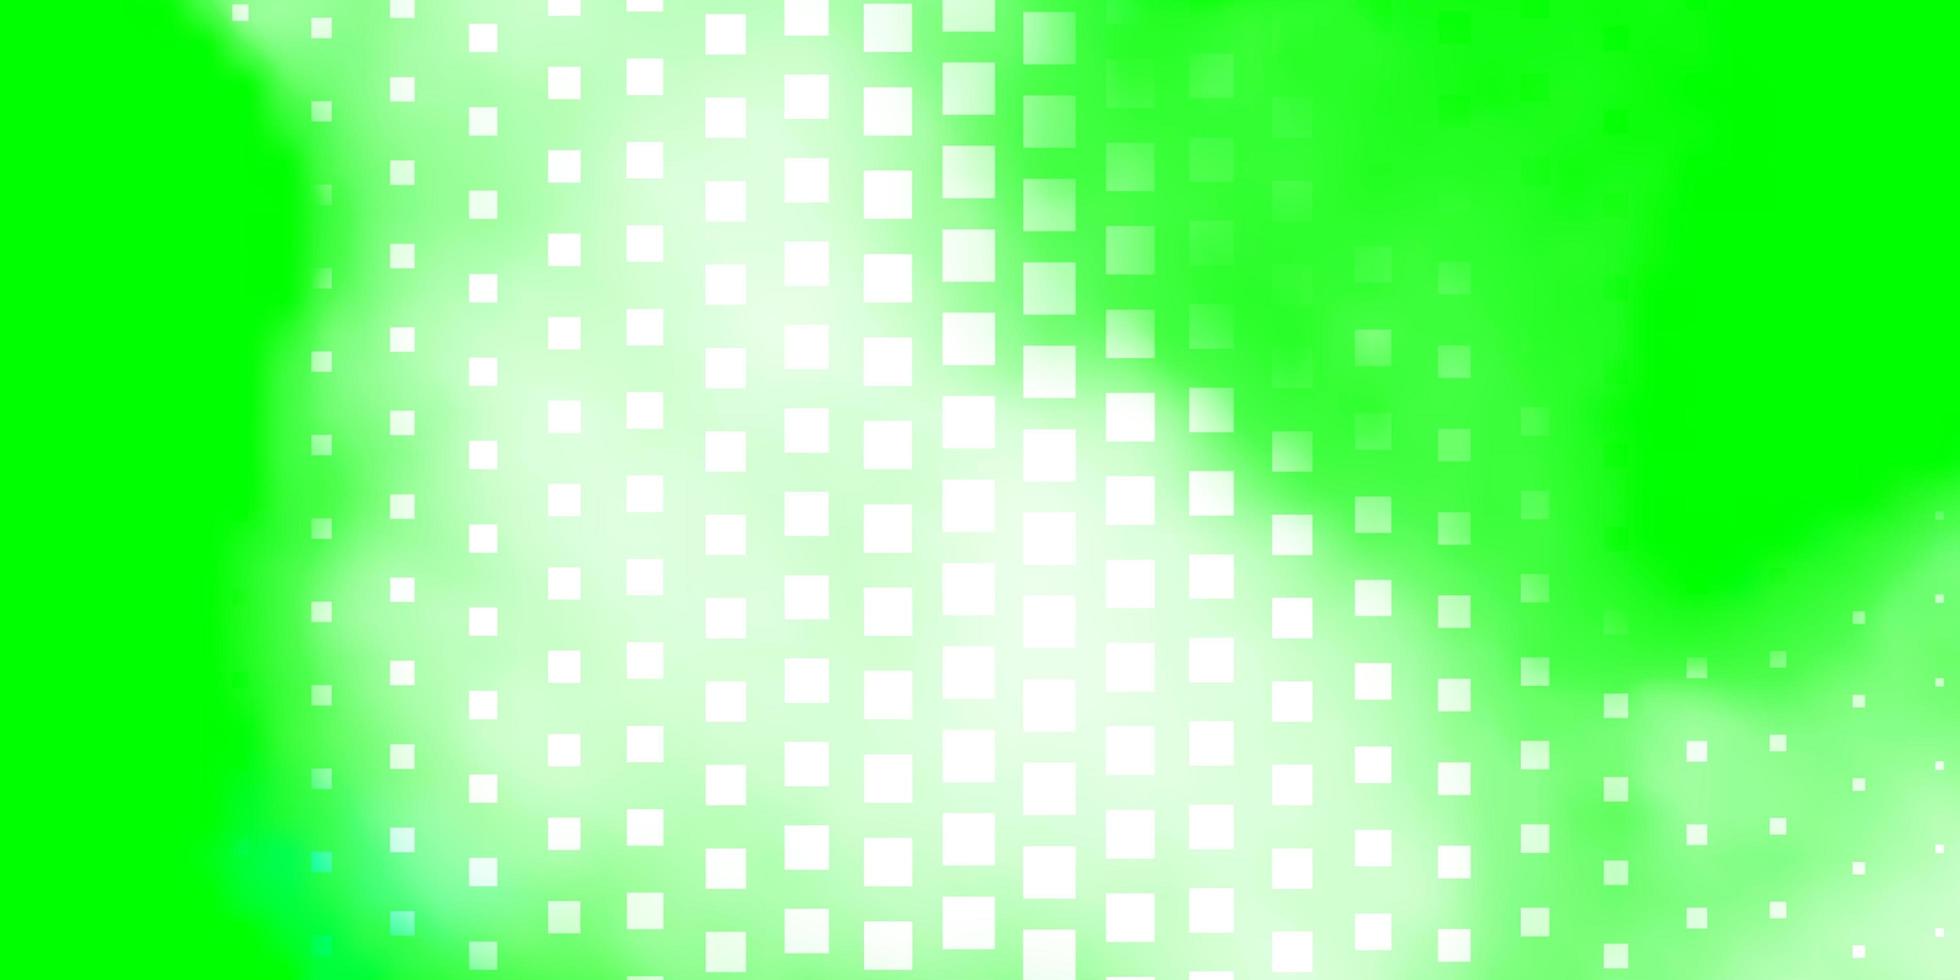 ljusgrön vektormall i rektanglar ny abstrakt illustration med rektangulära former mönster för affärshäften broschyrer vektor